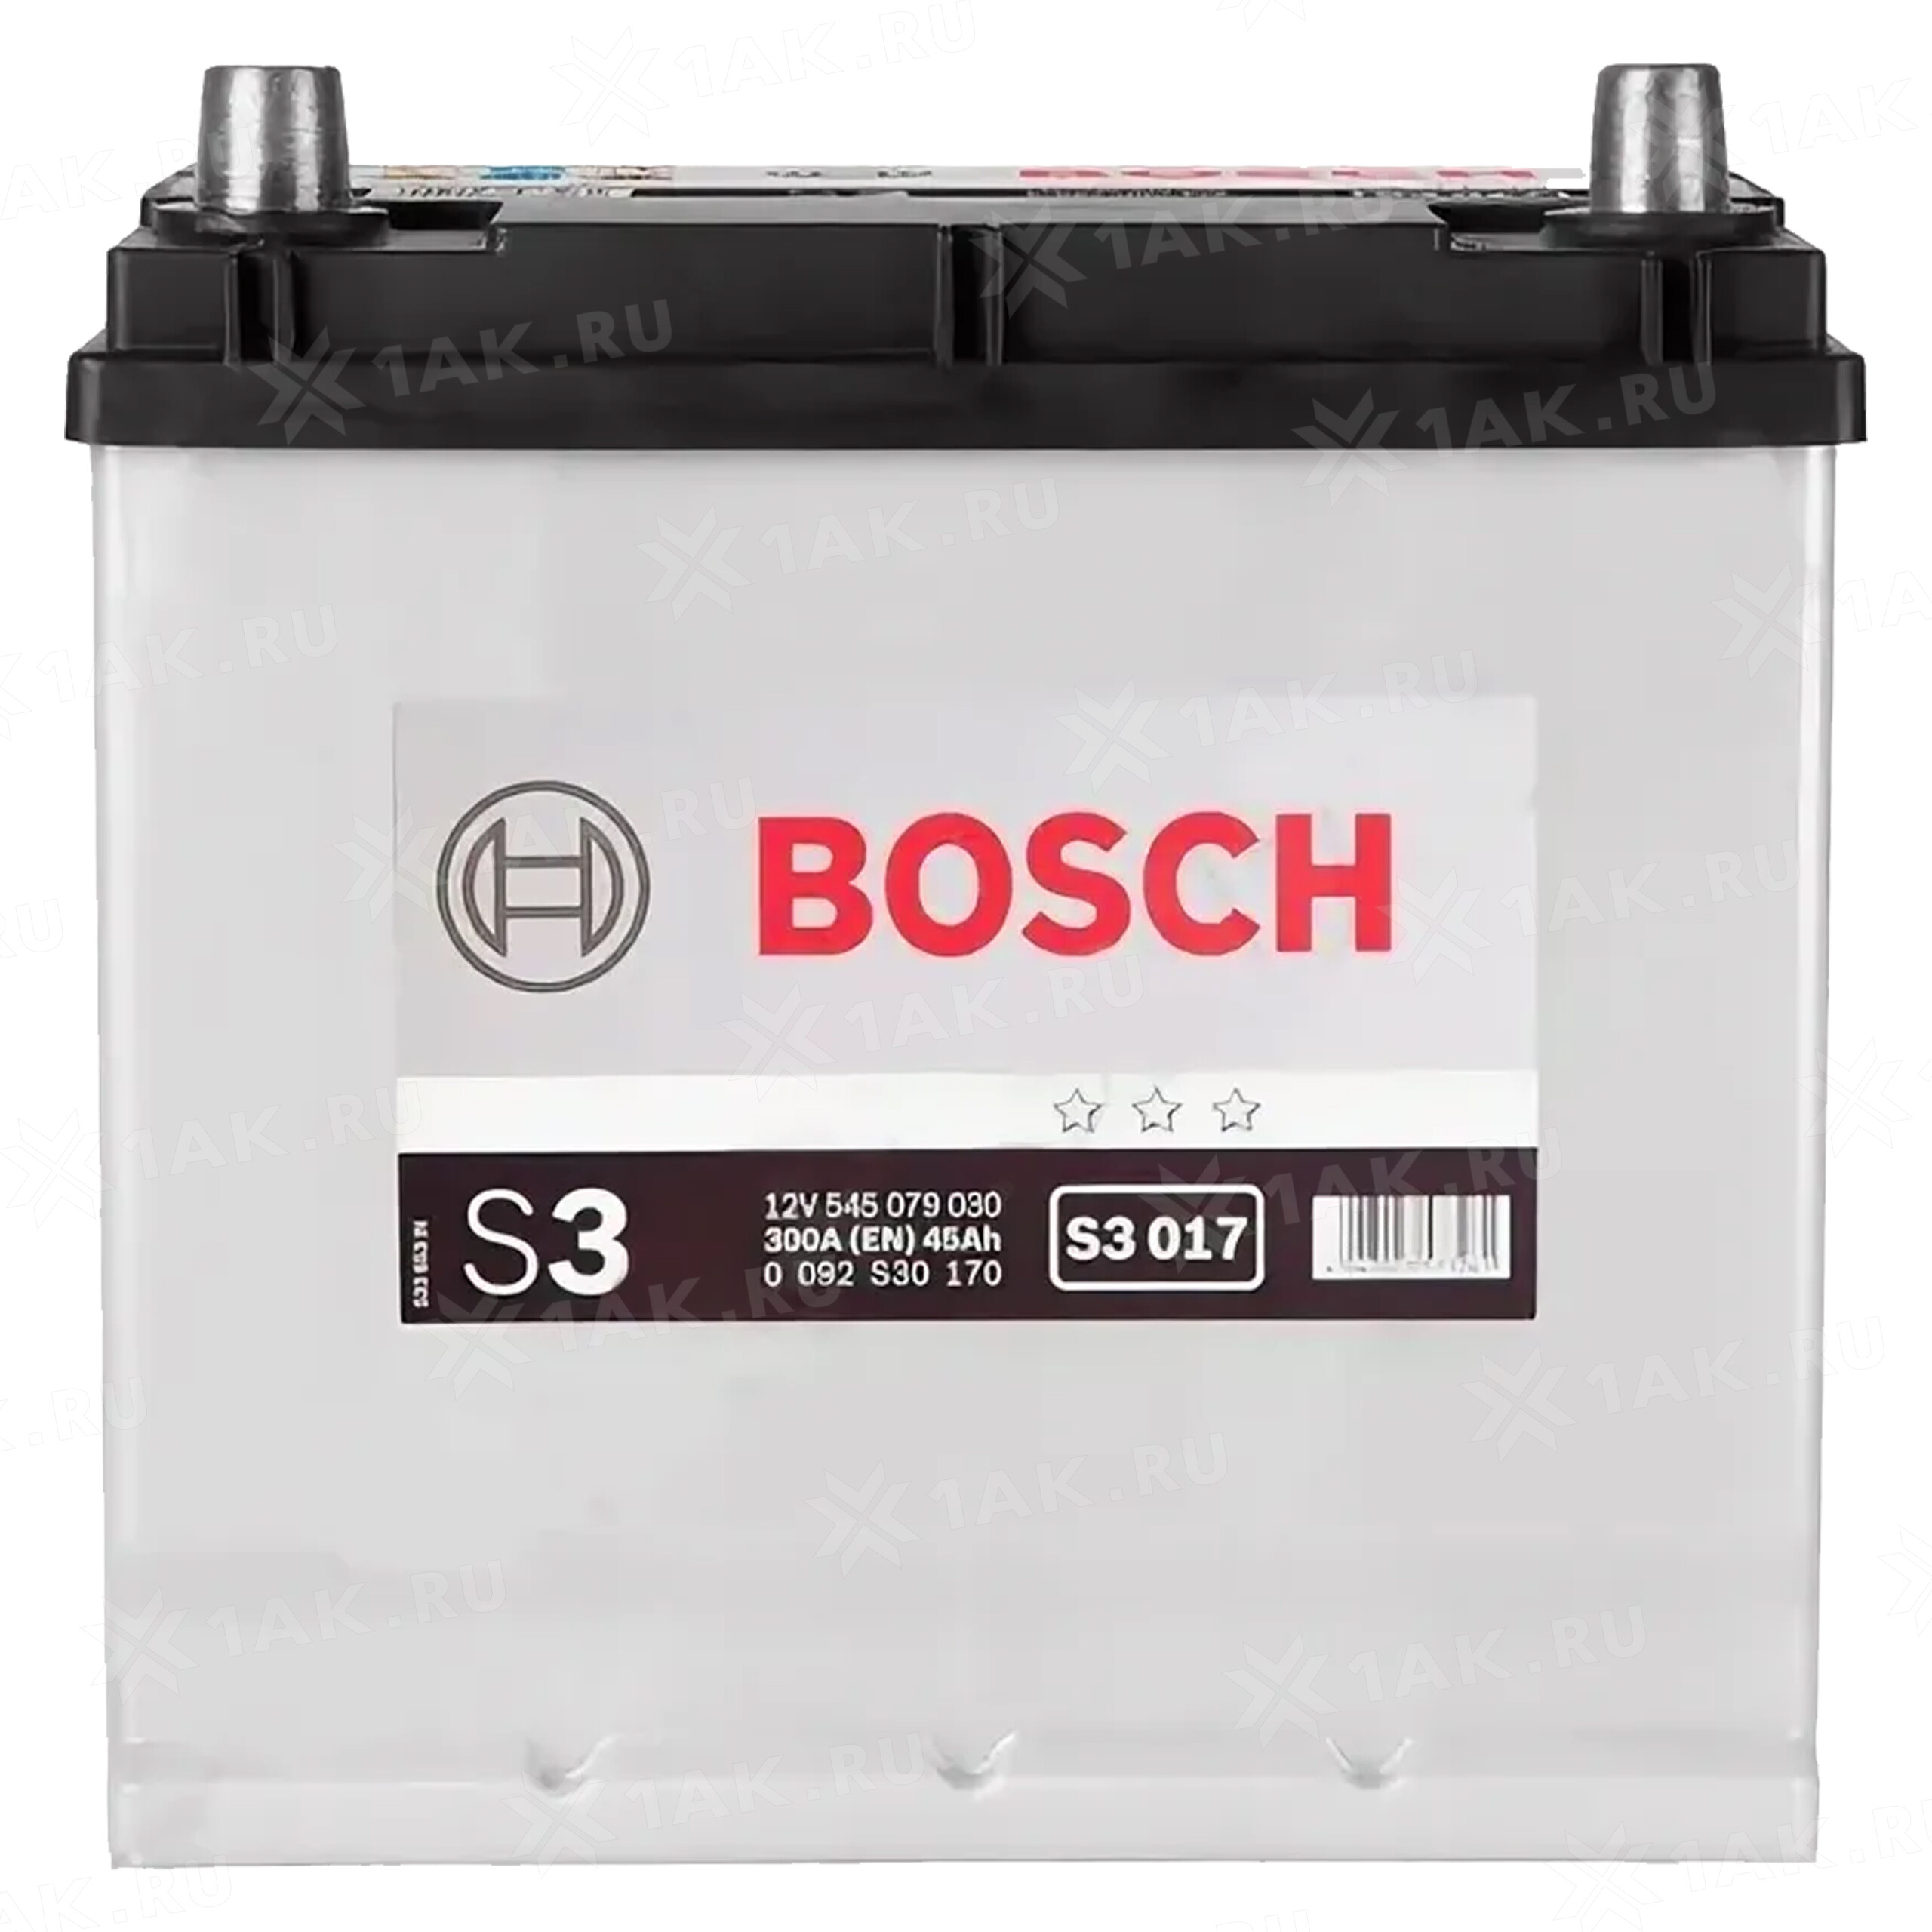 5 30 170. Аккумулятор Bosch 12v 45ah. Bosch s3 0 092 s30 170. Емкость бош (17000929). Емкость бош (709342).